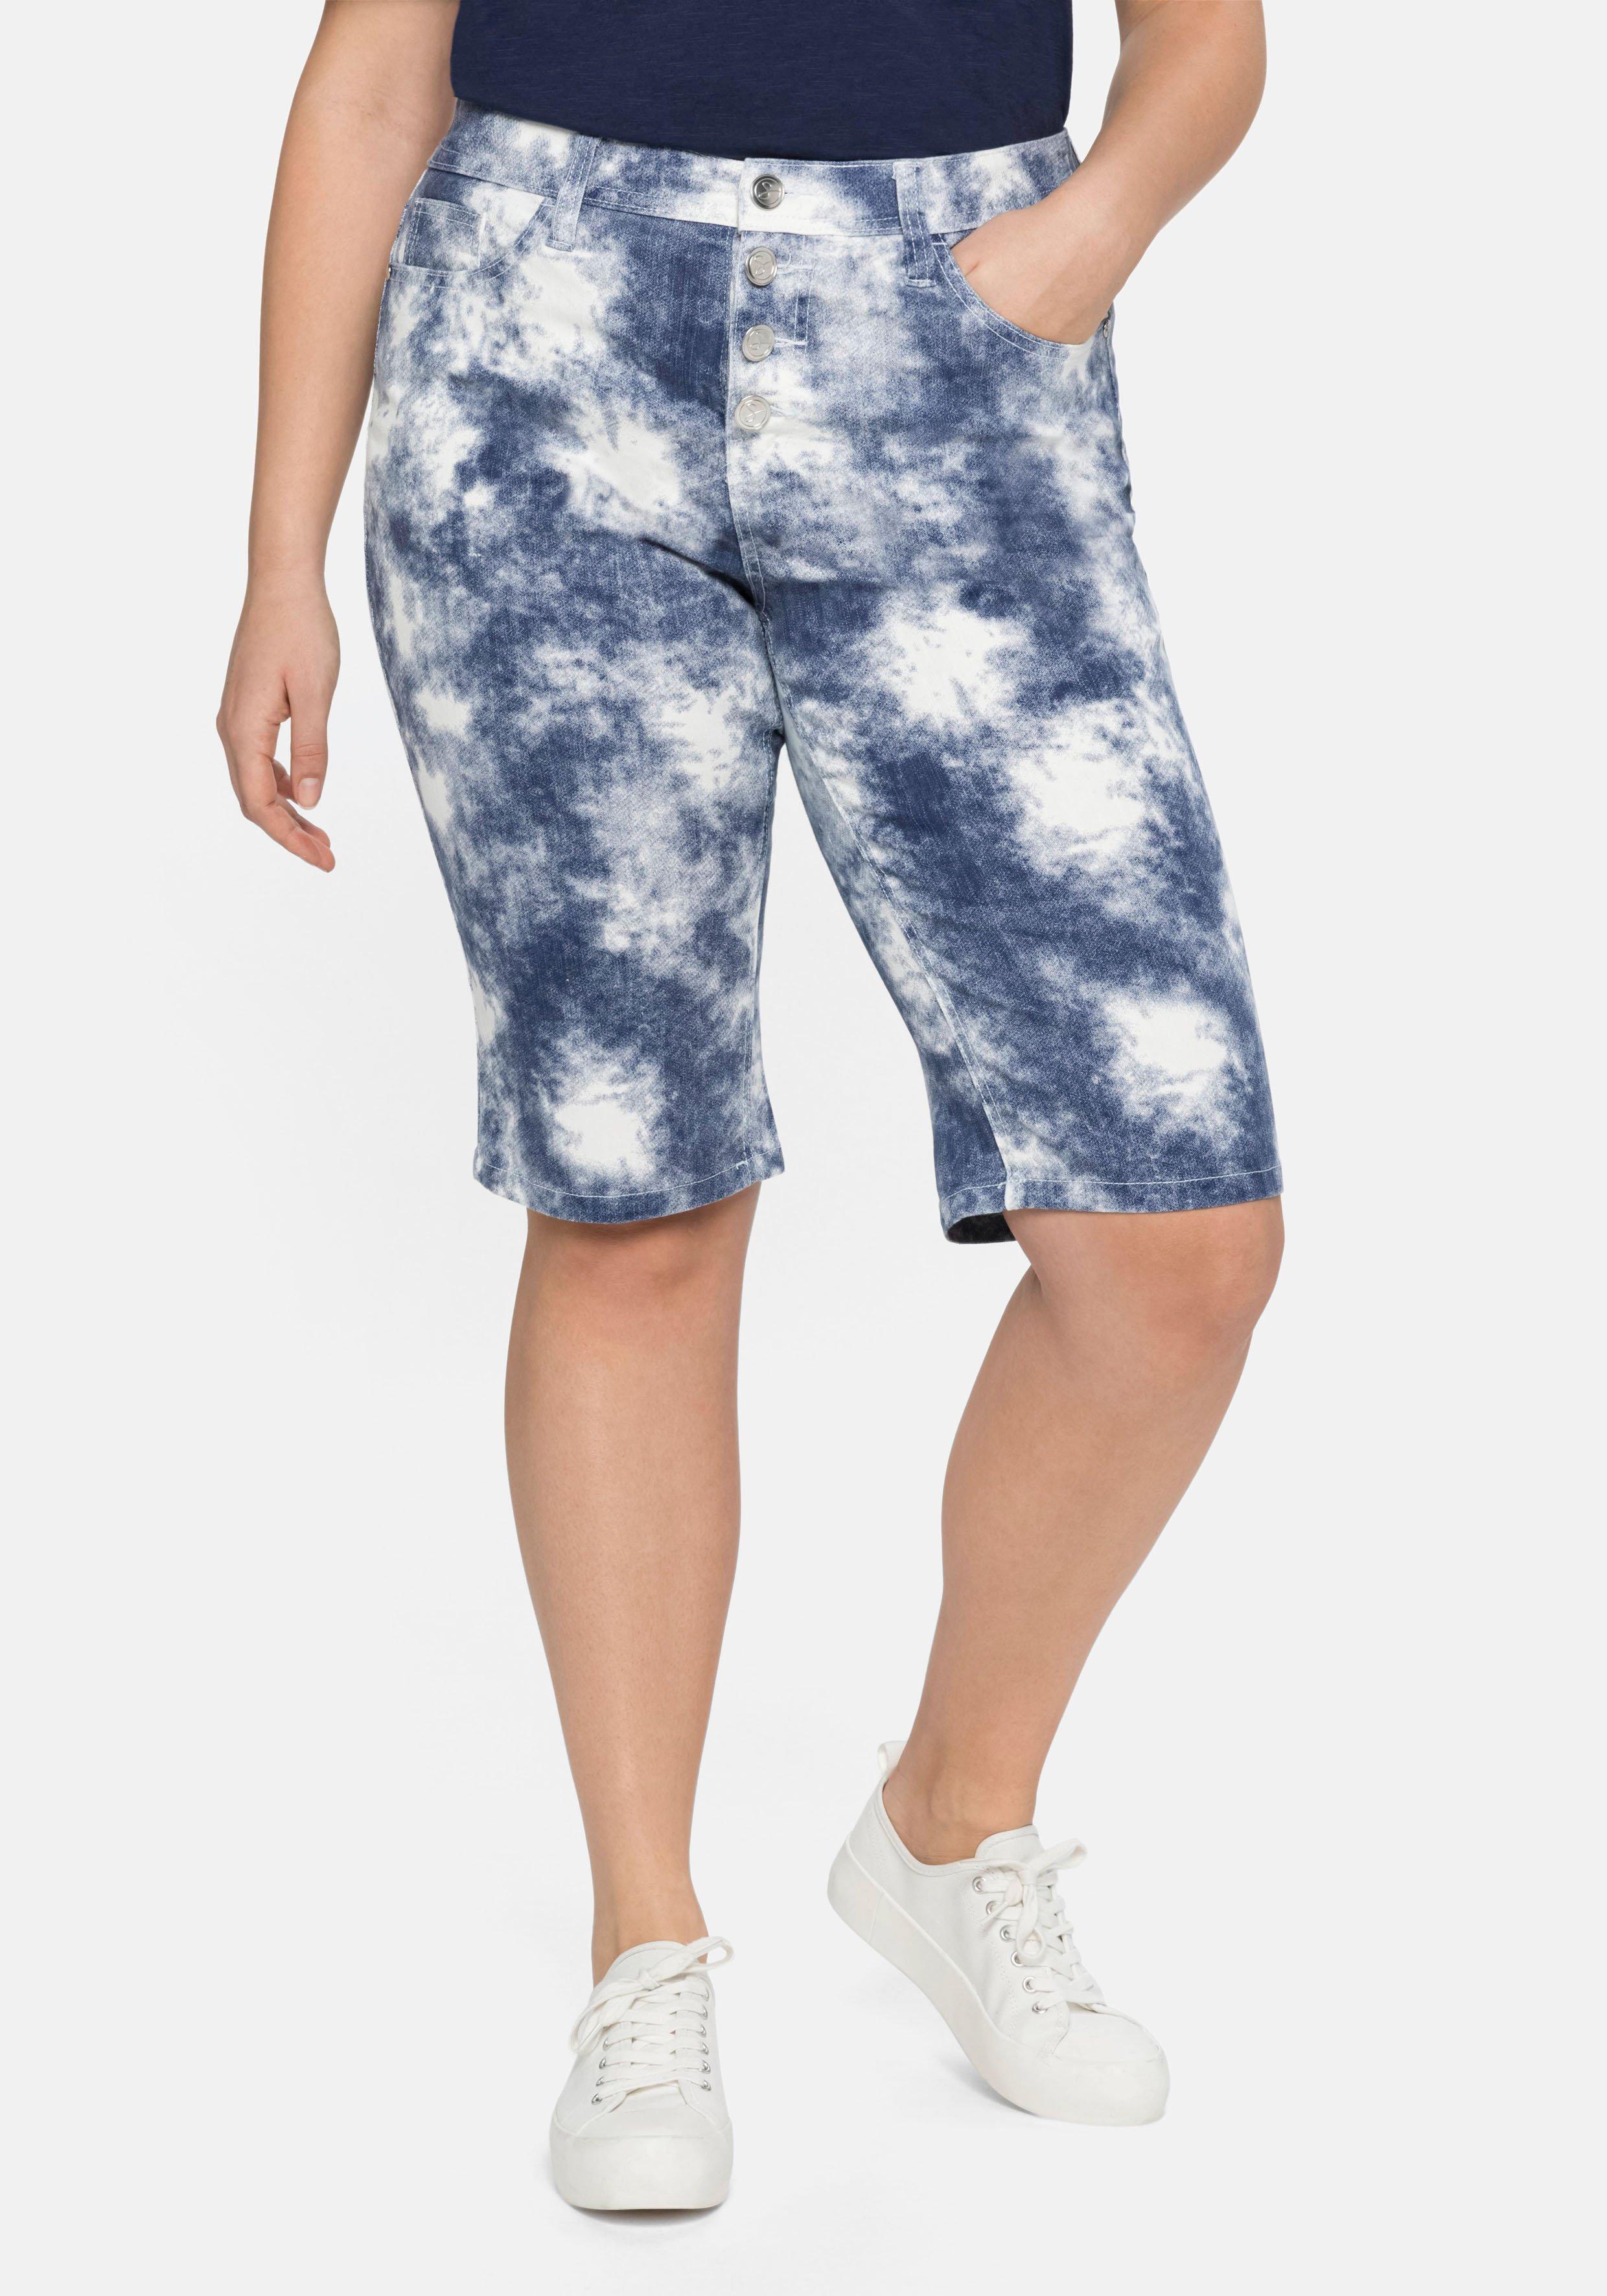 Jeansbermudas mit Batikdruck, in sheego | - royalblau-weiß 5-Pocket-Form